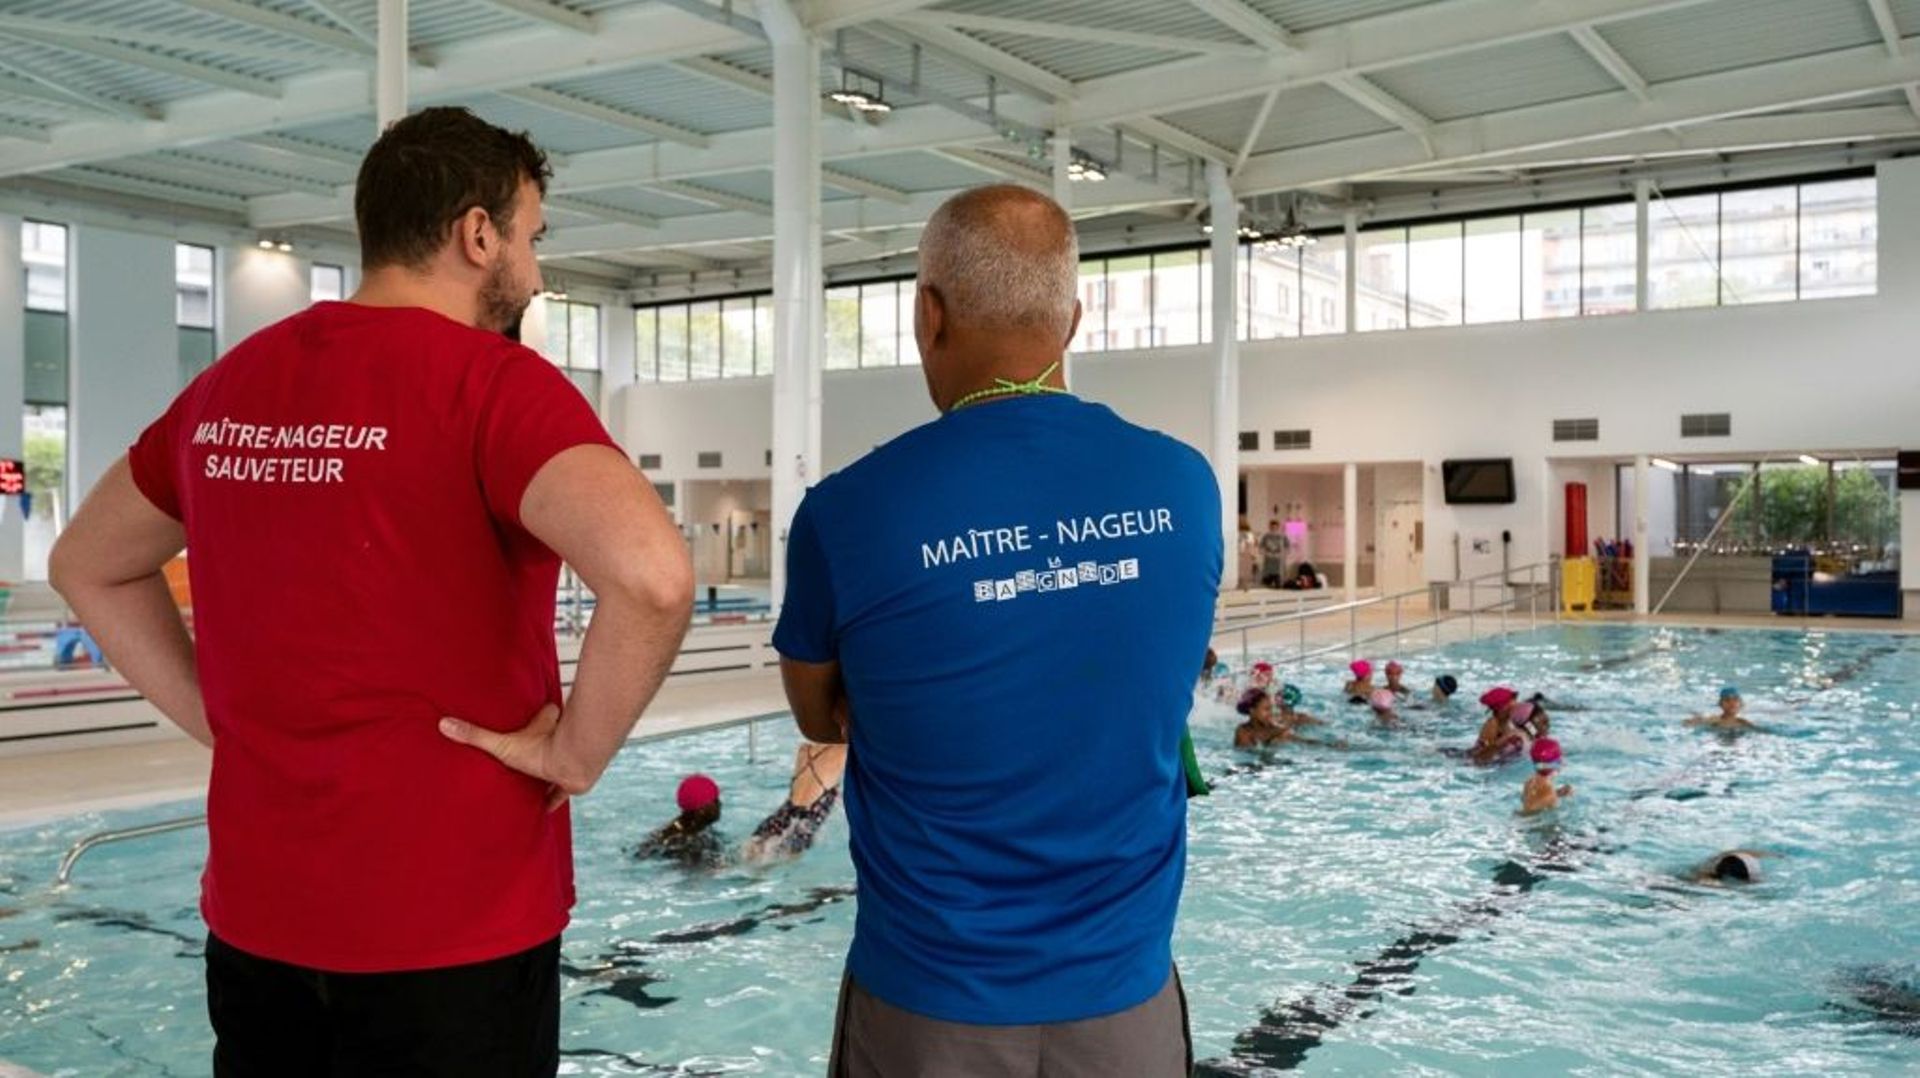 Des maîtres-nageurs surveillent le bassin de la piscine écologique Yvonne-Godard, le 9 septembre 2022 à Paris.